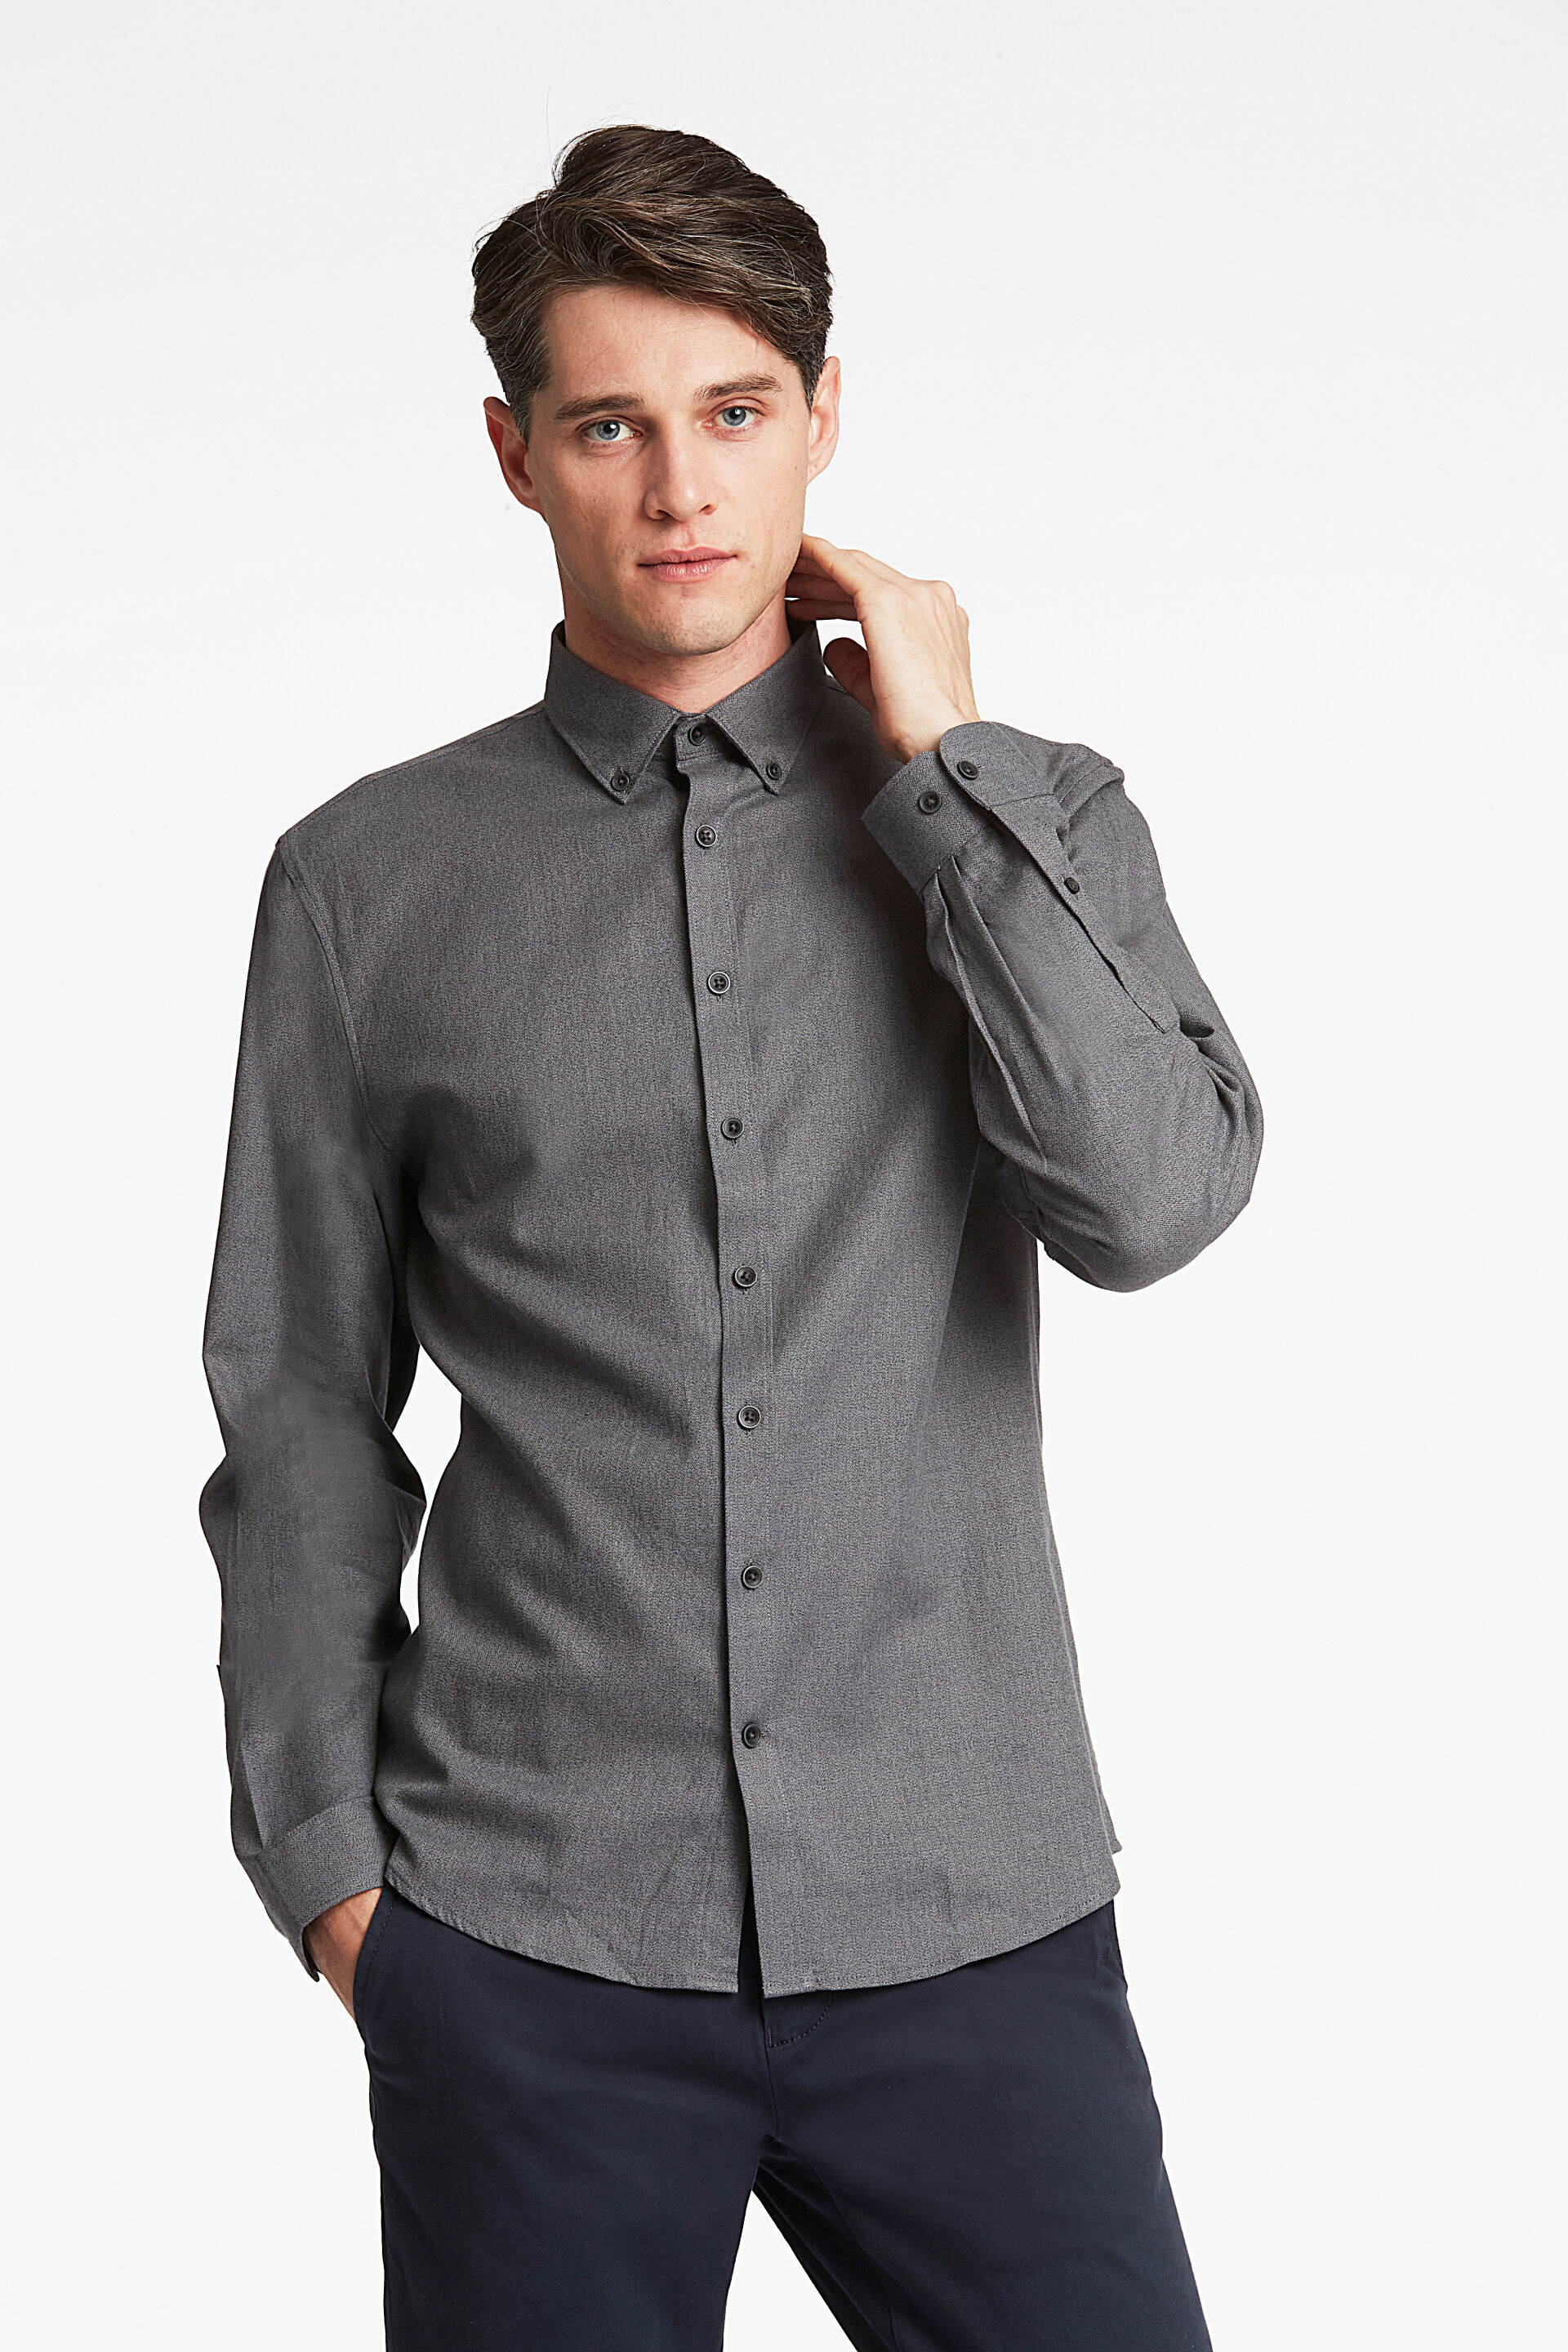 Business casual shirt Business casual shirt Grey 30-21064